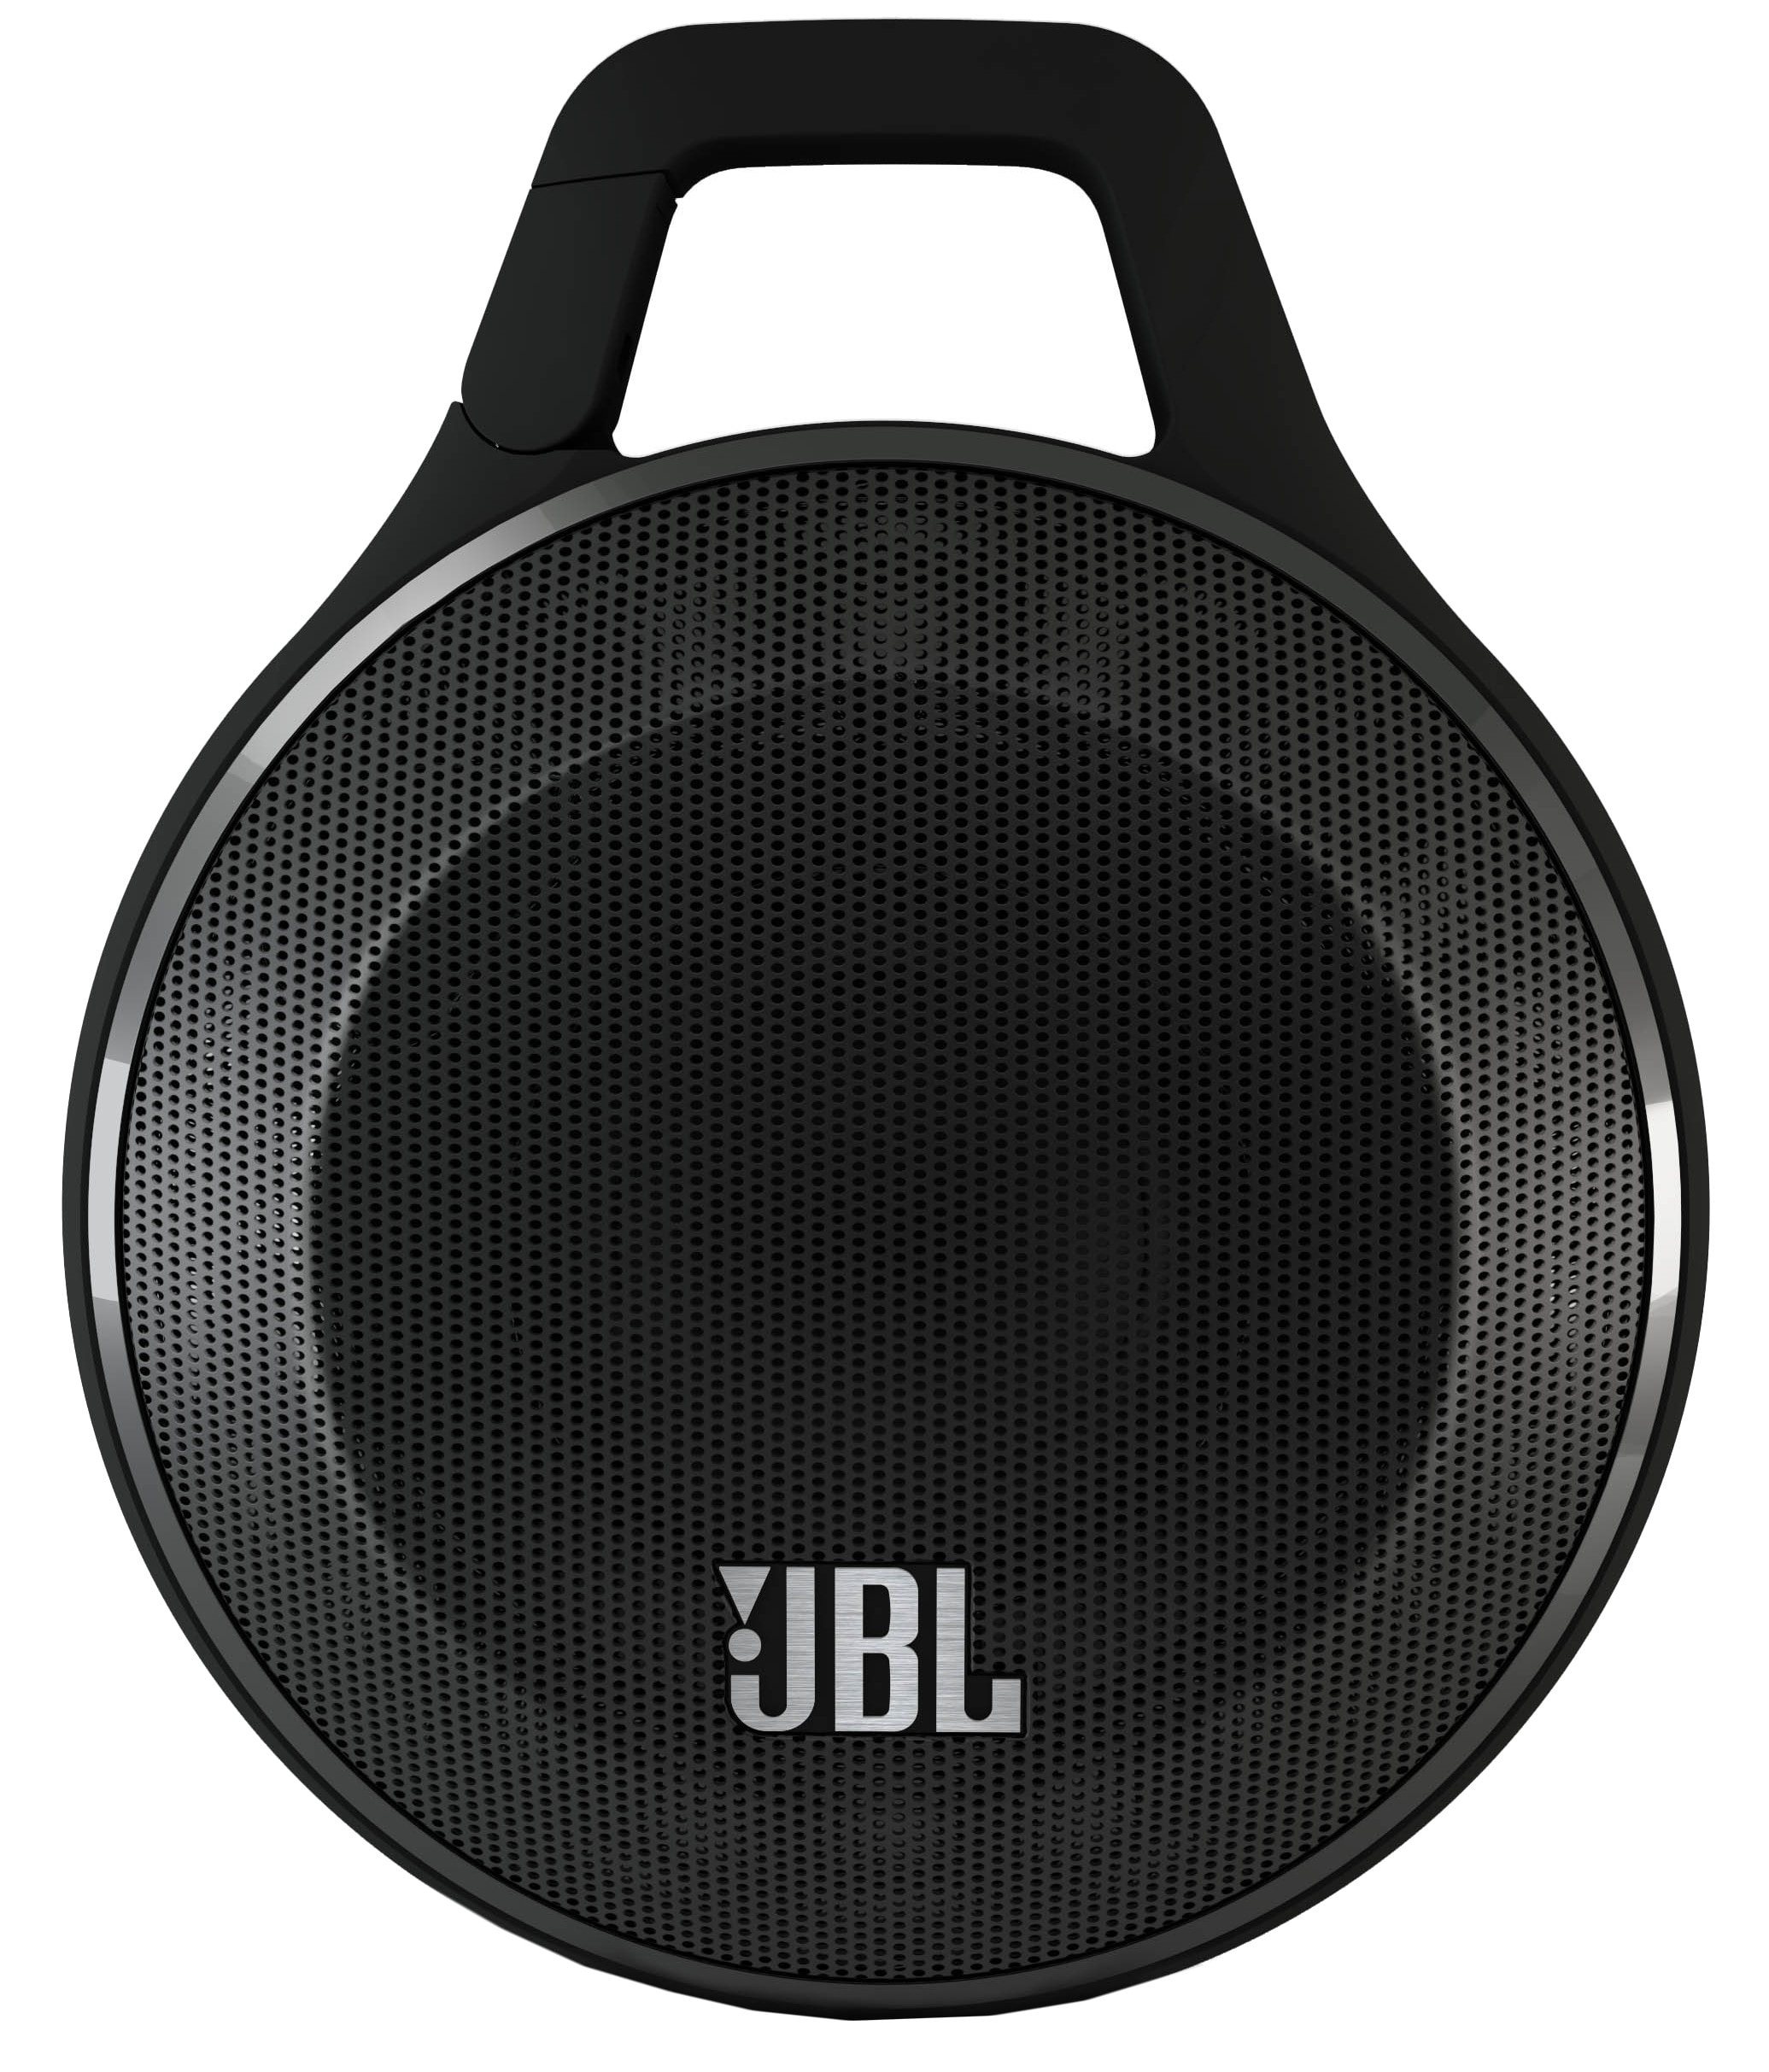 JBL Clip trådløs højttaler - sort - Højttalere - Elgiganten